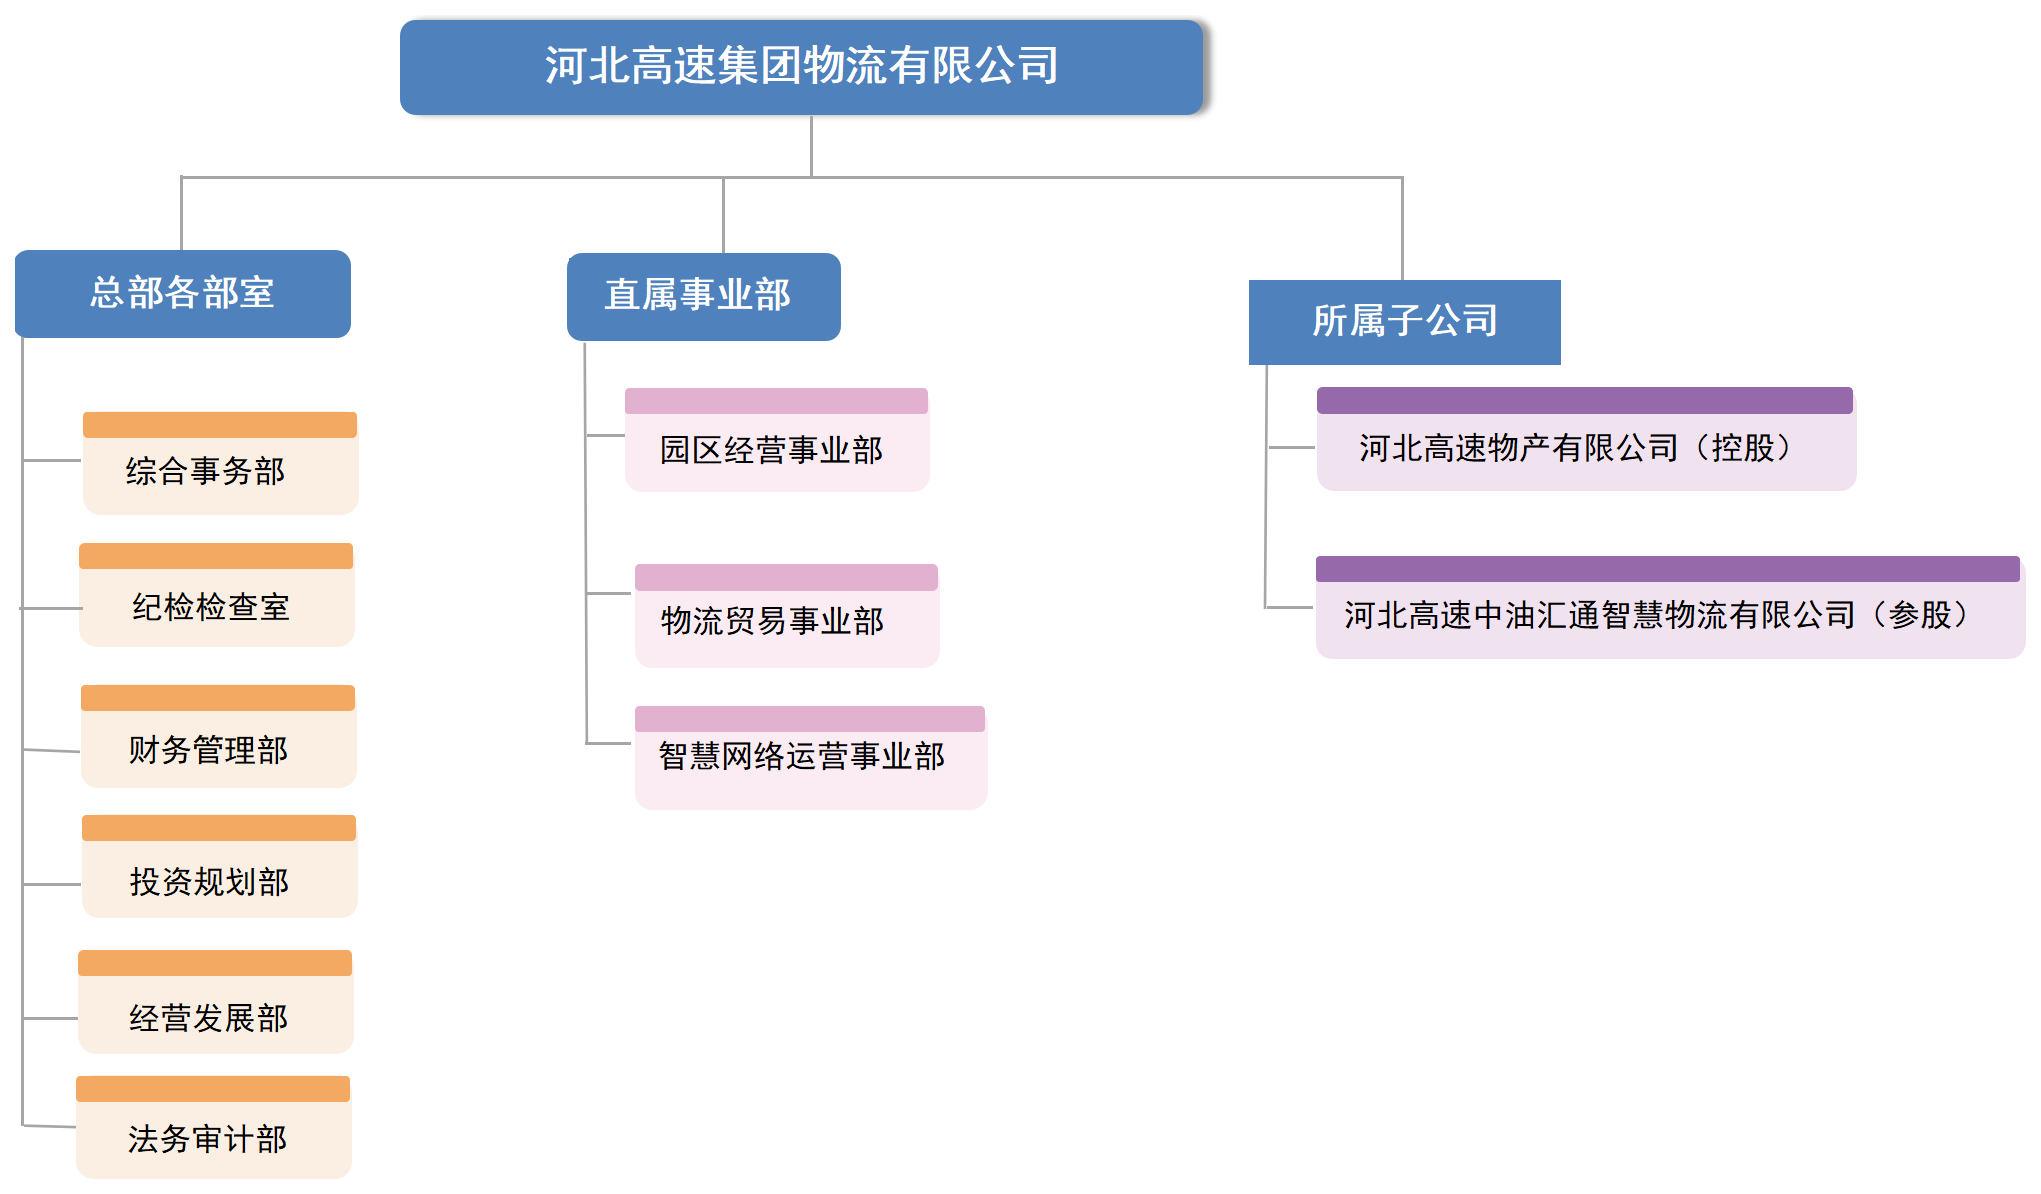 组织架构图1_Sheet1.png